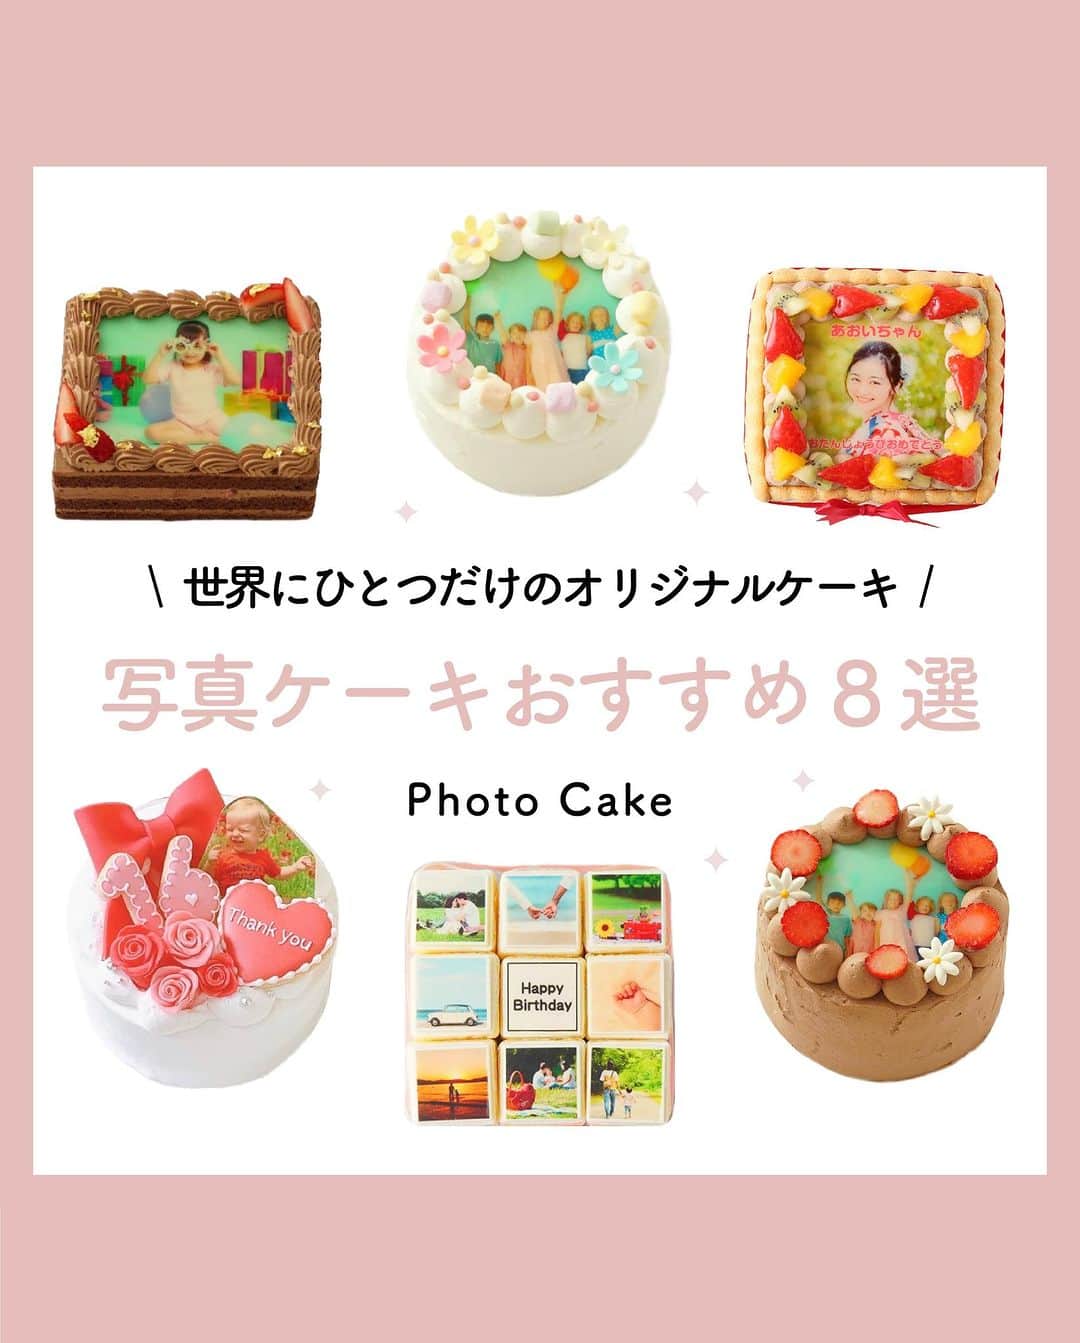 Cake.jpのインスタグラム：「世界に一つだけ✨ オリジナルケーキを作ろう！  写真ケーキチョコレート 苺×フラワー🍫 写真ケーキ 苺×ピスタチオ🍓 アルバムキャレケーキ、などなど  思い出をケーキで楽しめる😊  #誕生日#お誕生日#お祝い#誕生日ケーキ #お祝いギフト#ケーキギフト#ギフト#記念日 #オリジナルケーキ#オーダーメイドケーキ #写真ケーキ#お誕生日プレゼント#ケーキプレゼント #スイーツ#スイーツ部 #スイーツ男子  #スイーツ女子 #スイーツ好き#スイーツテロ #スイーツ巡り  #スイーツ好きな人と繋がりたい #お取り寄せ  #お取り寄せグルメ #お取り寄せスイーツ #可愛いスイーツ#映えスイーツ#おうちスイーツ」